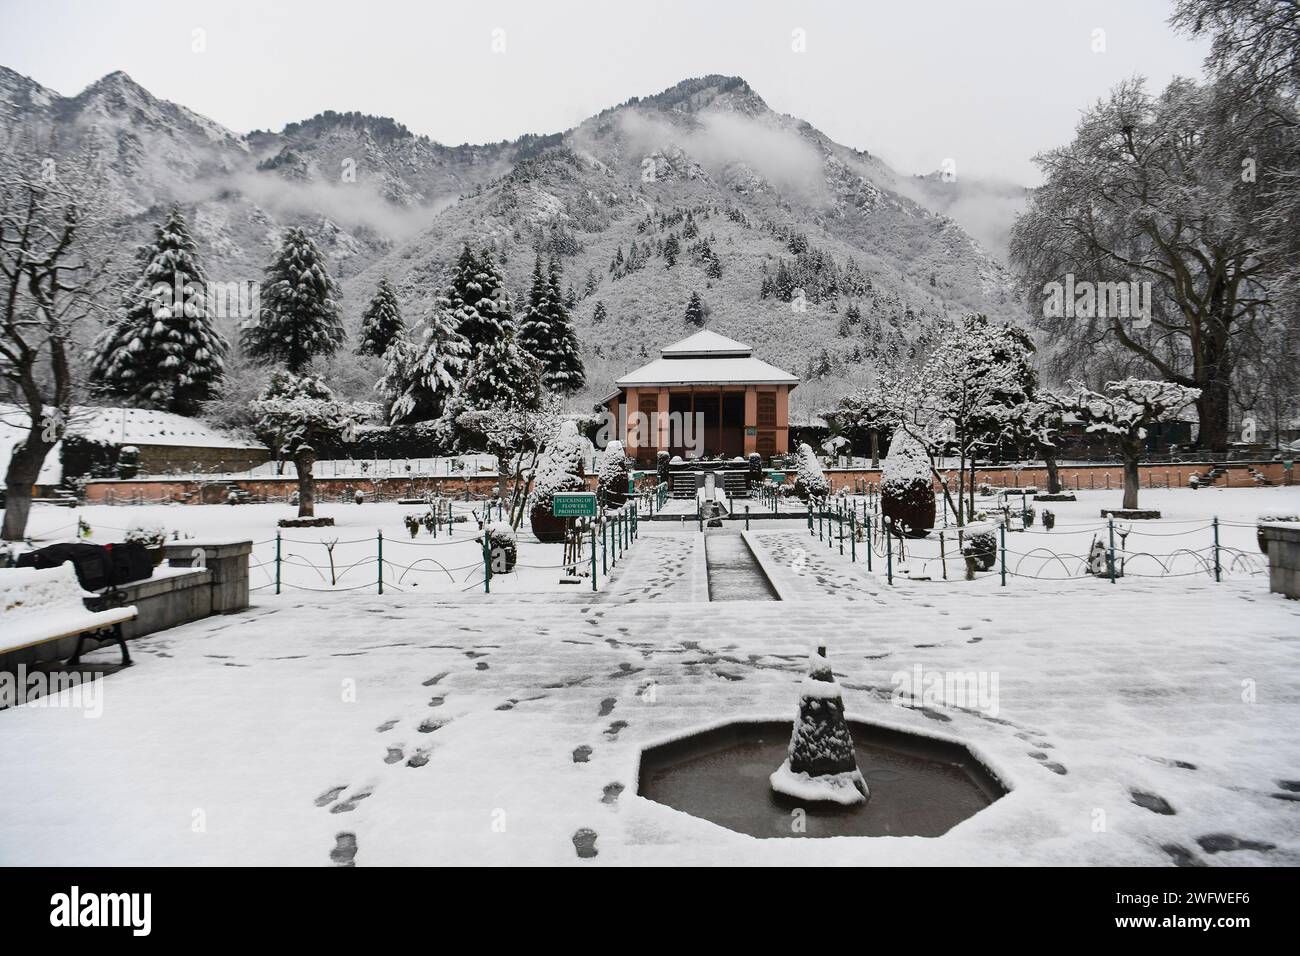 Les chutes de neige fraîches dans les tronçons supérieurs de la vallée du Cachemire ont brisé l'une des plus longues périodes de sécheresse d'environ deux mois cette saison. Une nouvelle chute de neige a apporté la joie aux habitants et aux touristes. L'économie de l'État est fortement dépendante de l'industrie du tourisme et les chutes de neige après une longue attente devraient attirer les touristes dans la vallée de l'argent scintillante. Cachemire, Inde. Banque D'Images